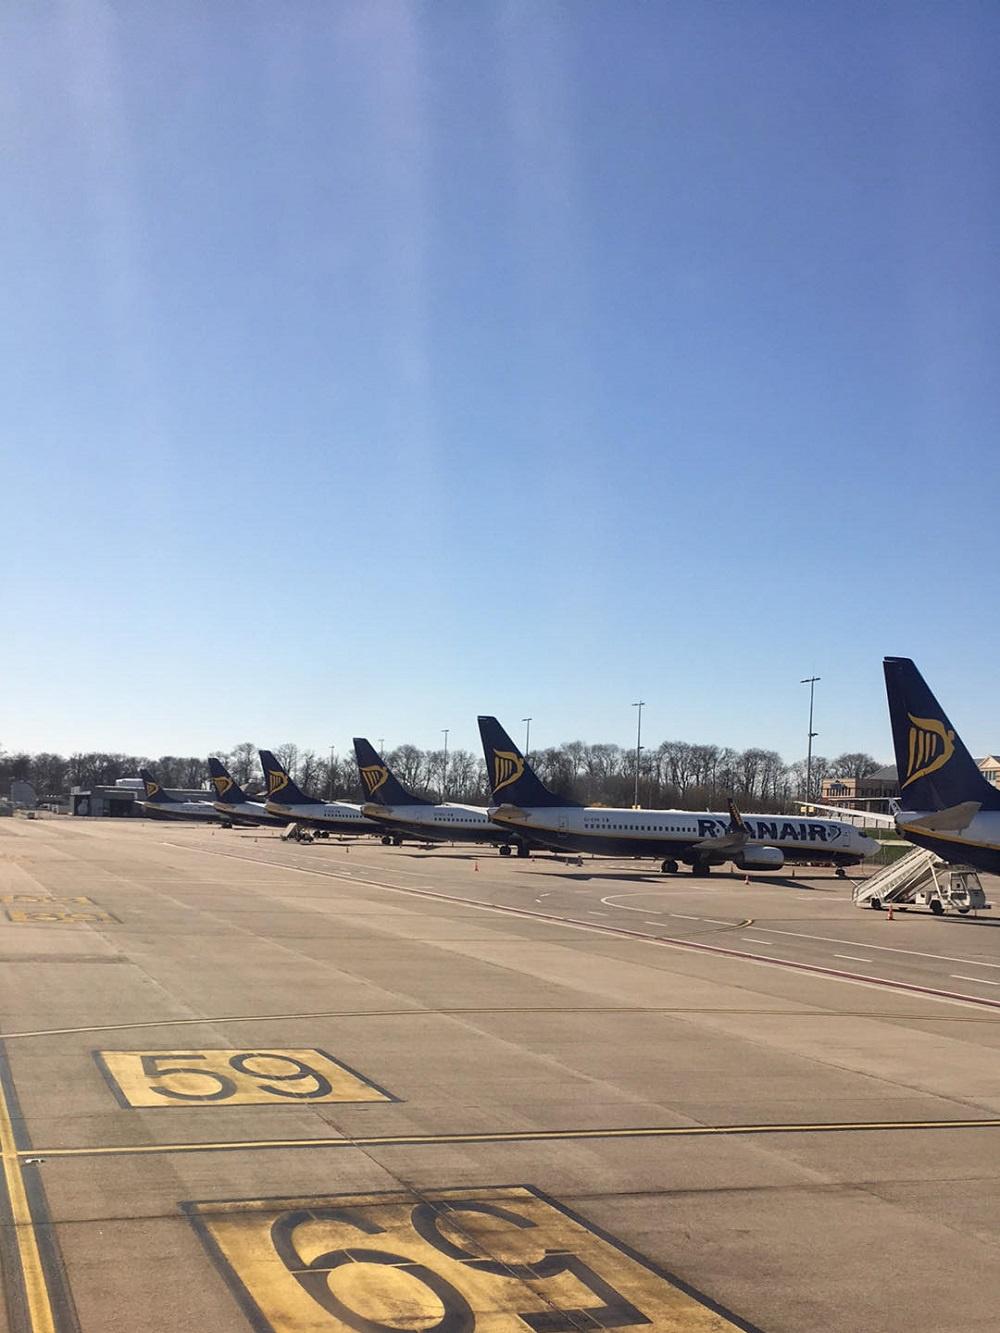 A Charleroi, les derniers vols décollent complètement vides (photos)